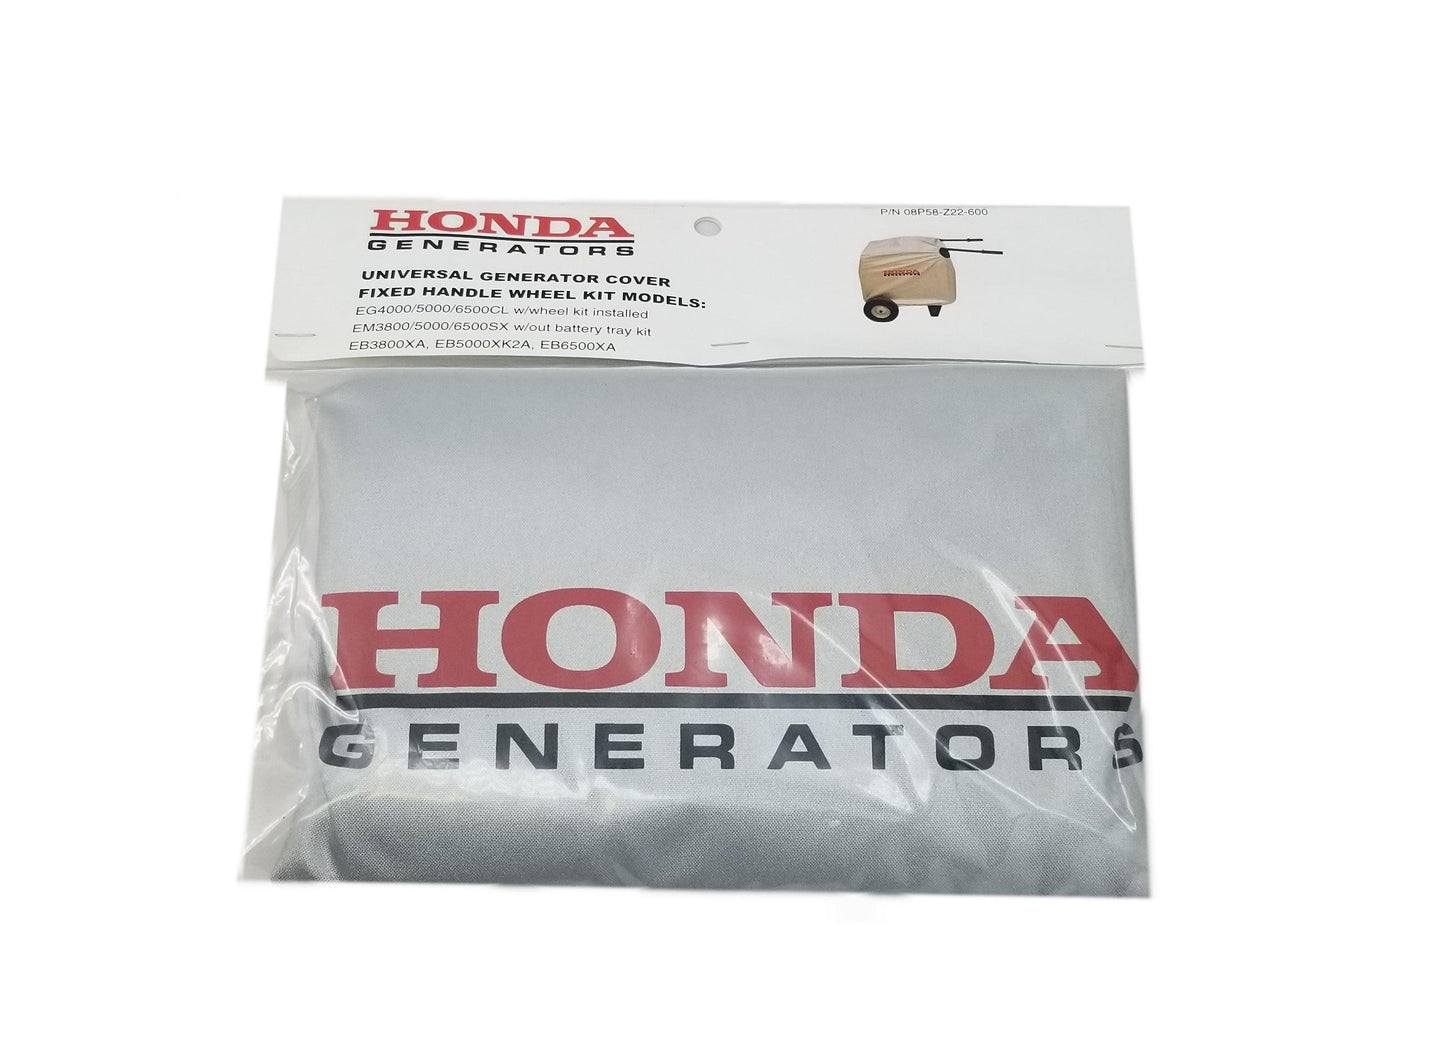 Honda Fixed Handle Generator Cover - 08P58-Z22-600